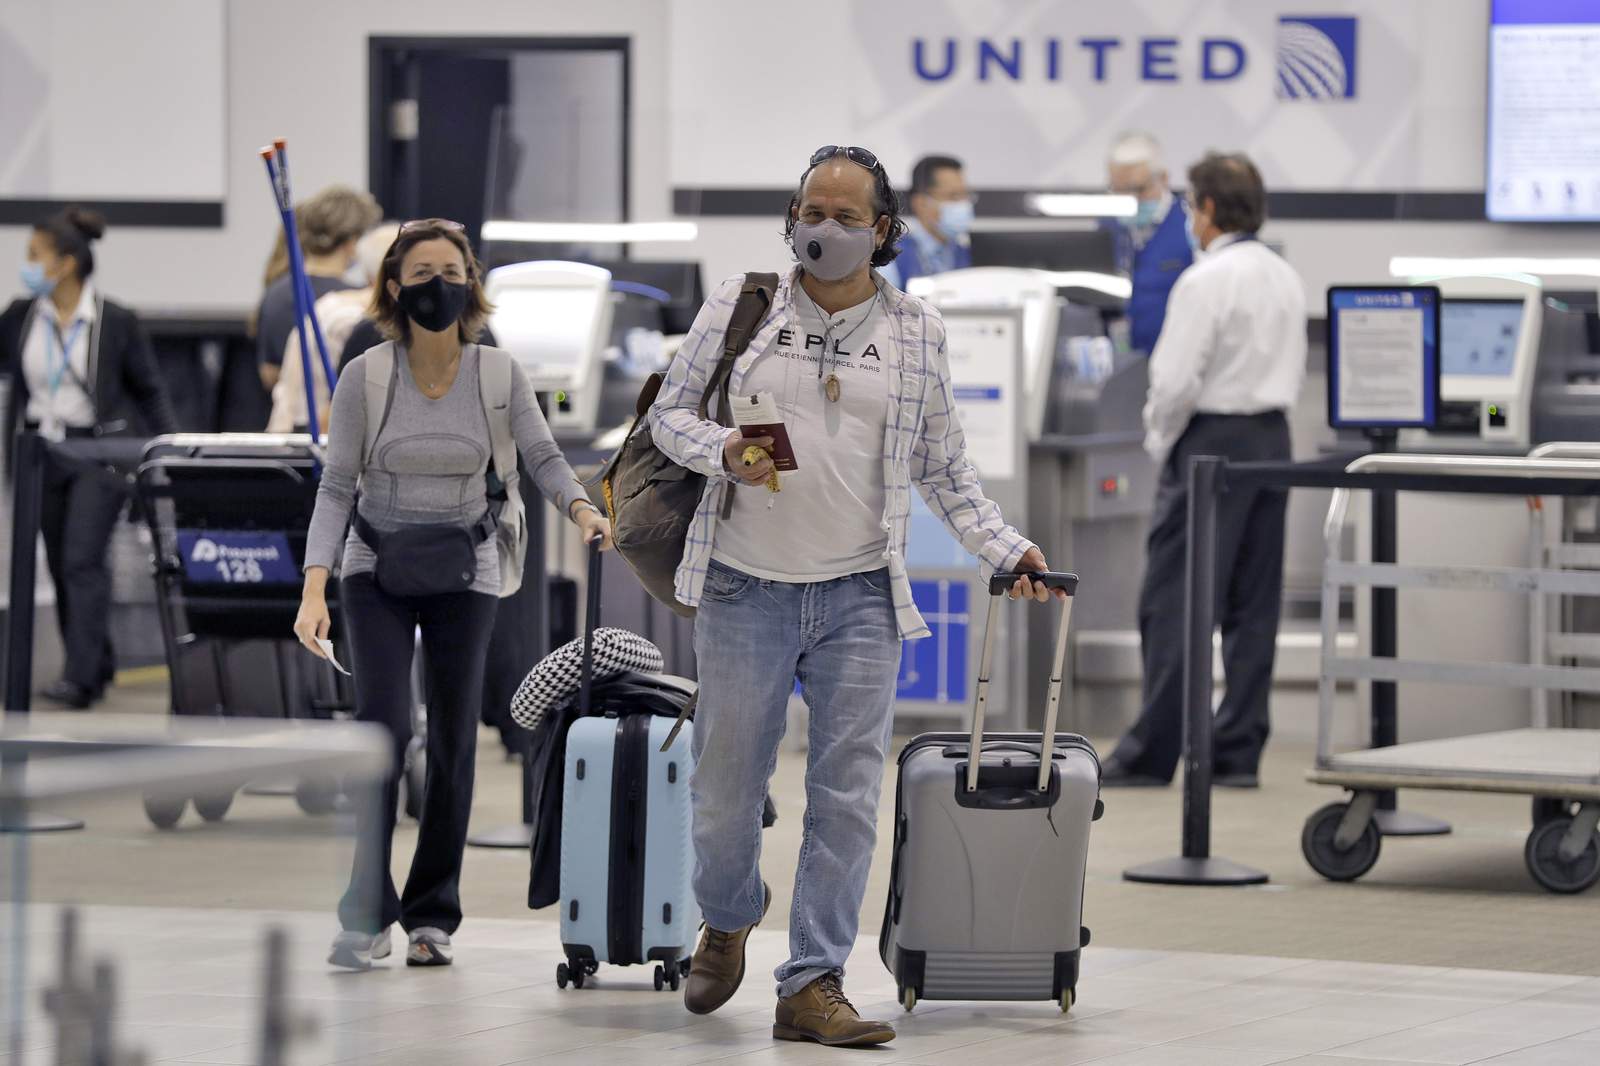 Tampa airport says it will test passengers for coronavirus